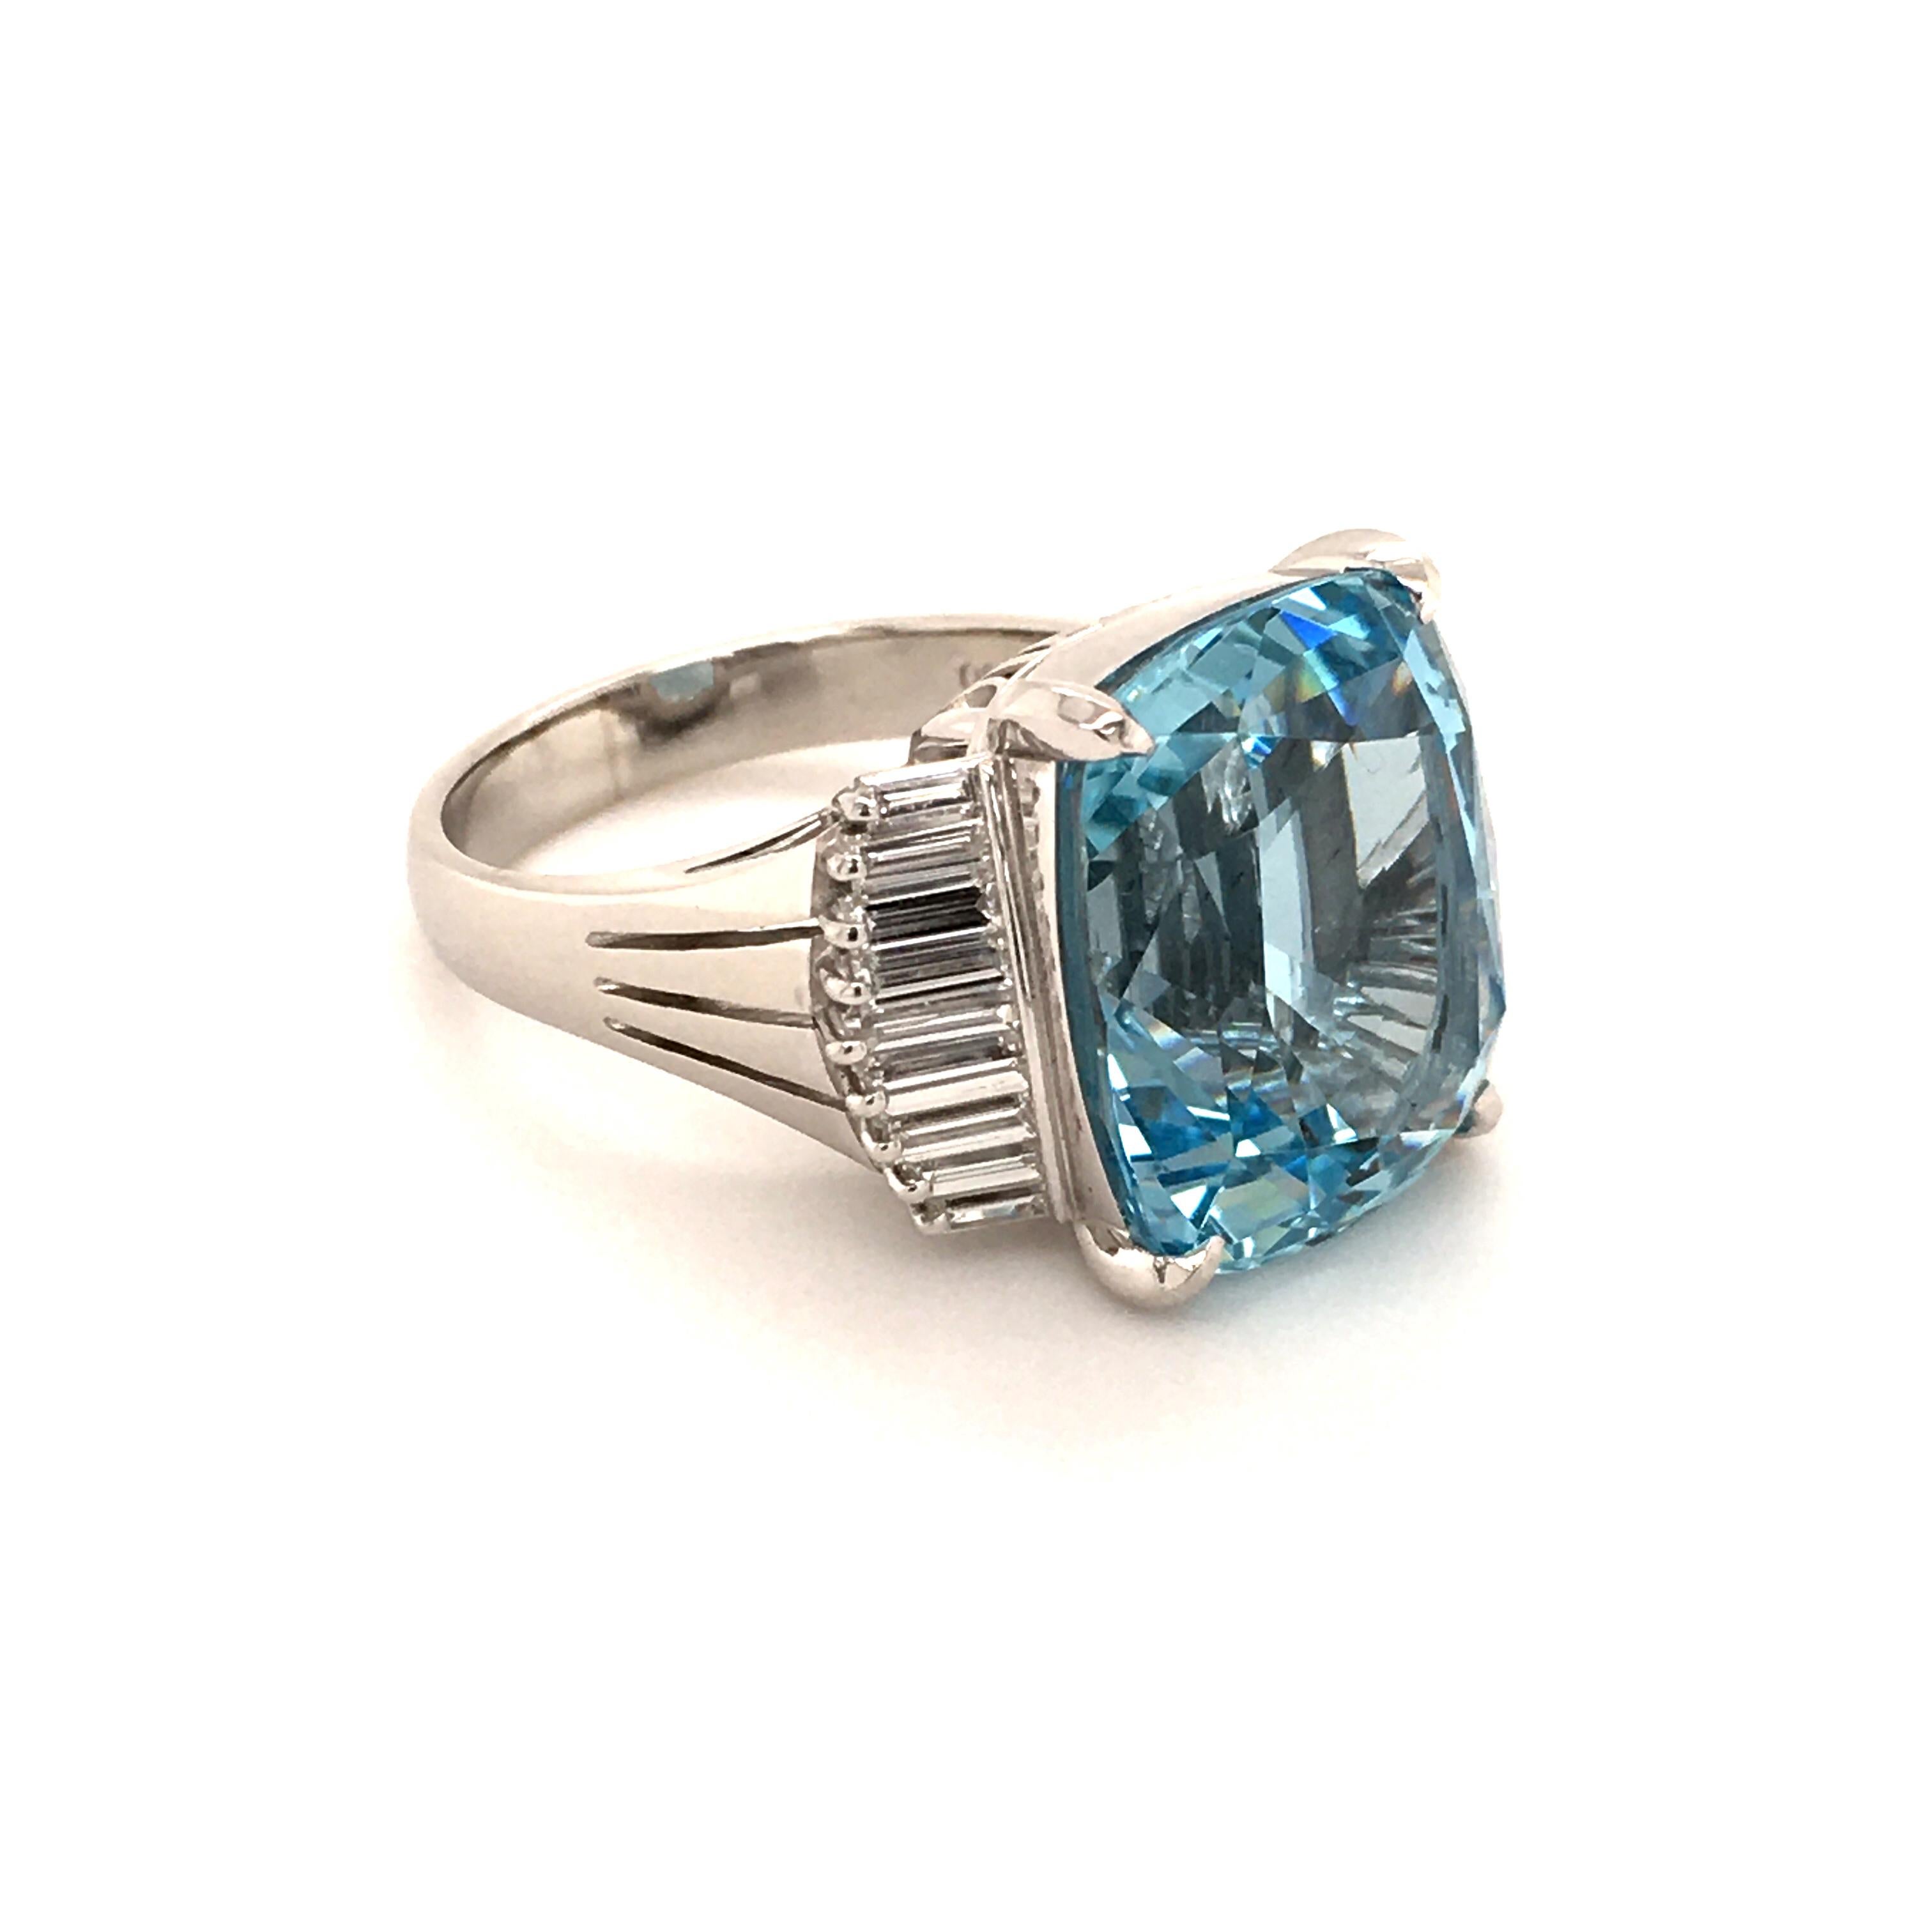 Cushion Cut 11.89 Carat Aquamarine Ring with Diamonds in Platinum